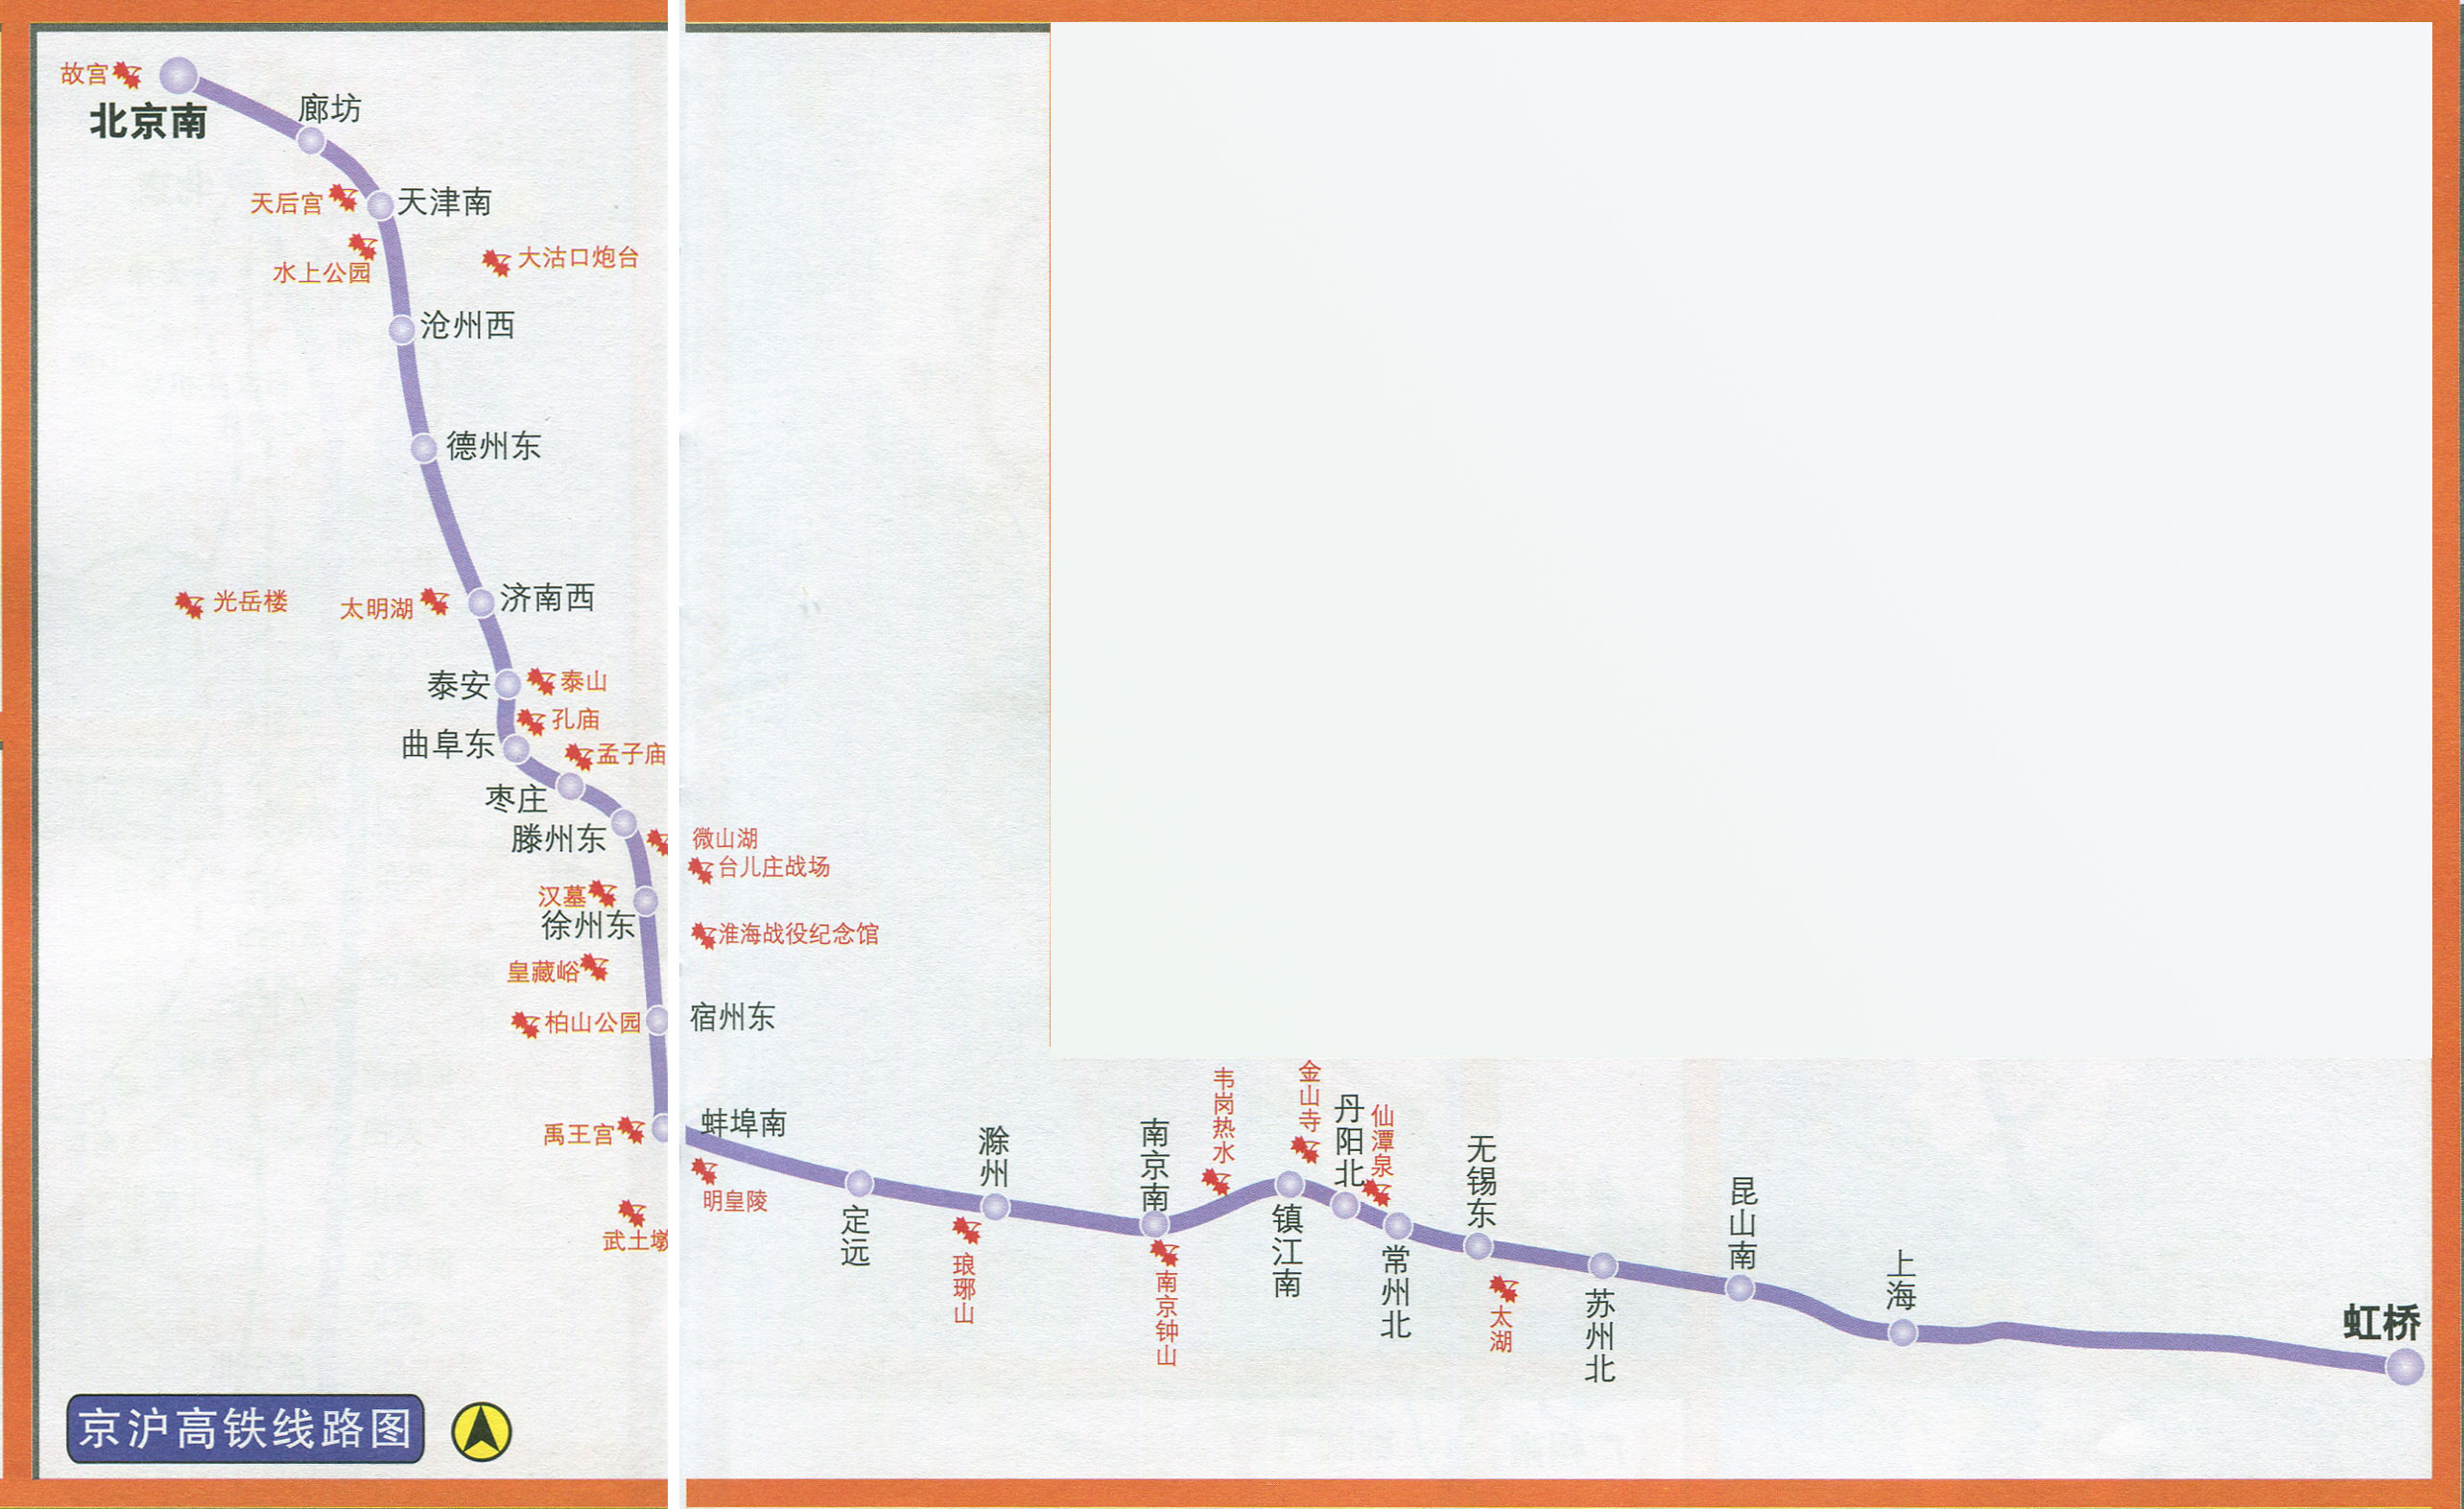 上一张地图: 沪昆高铁线路图  | 高铁线路图 |  下一张地图: 温福高铁